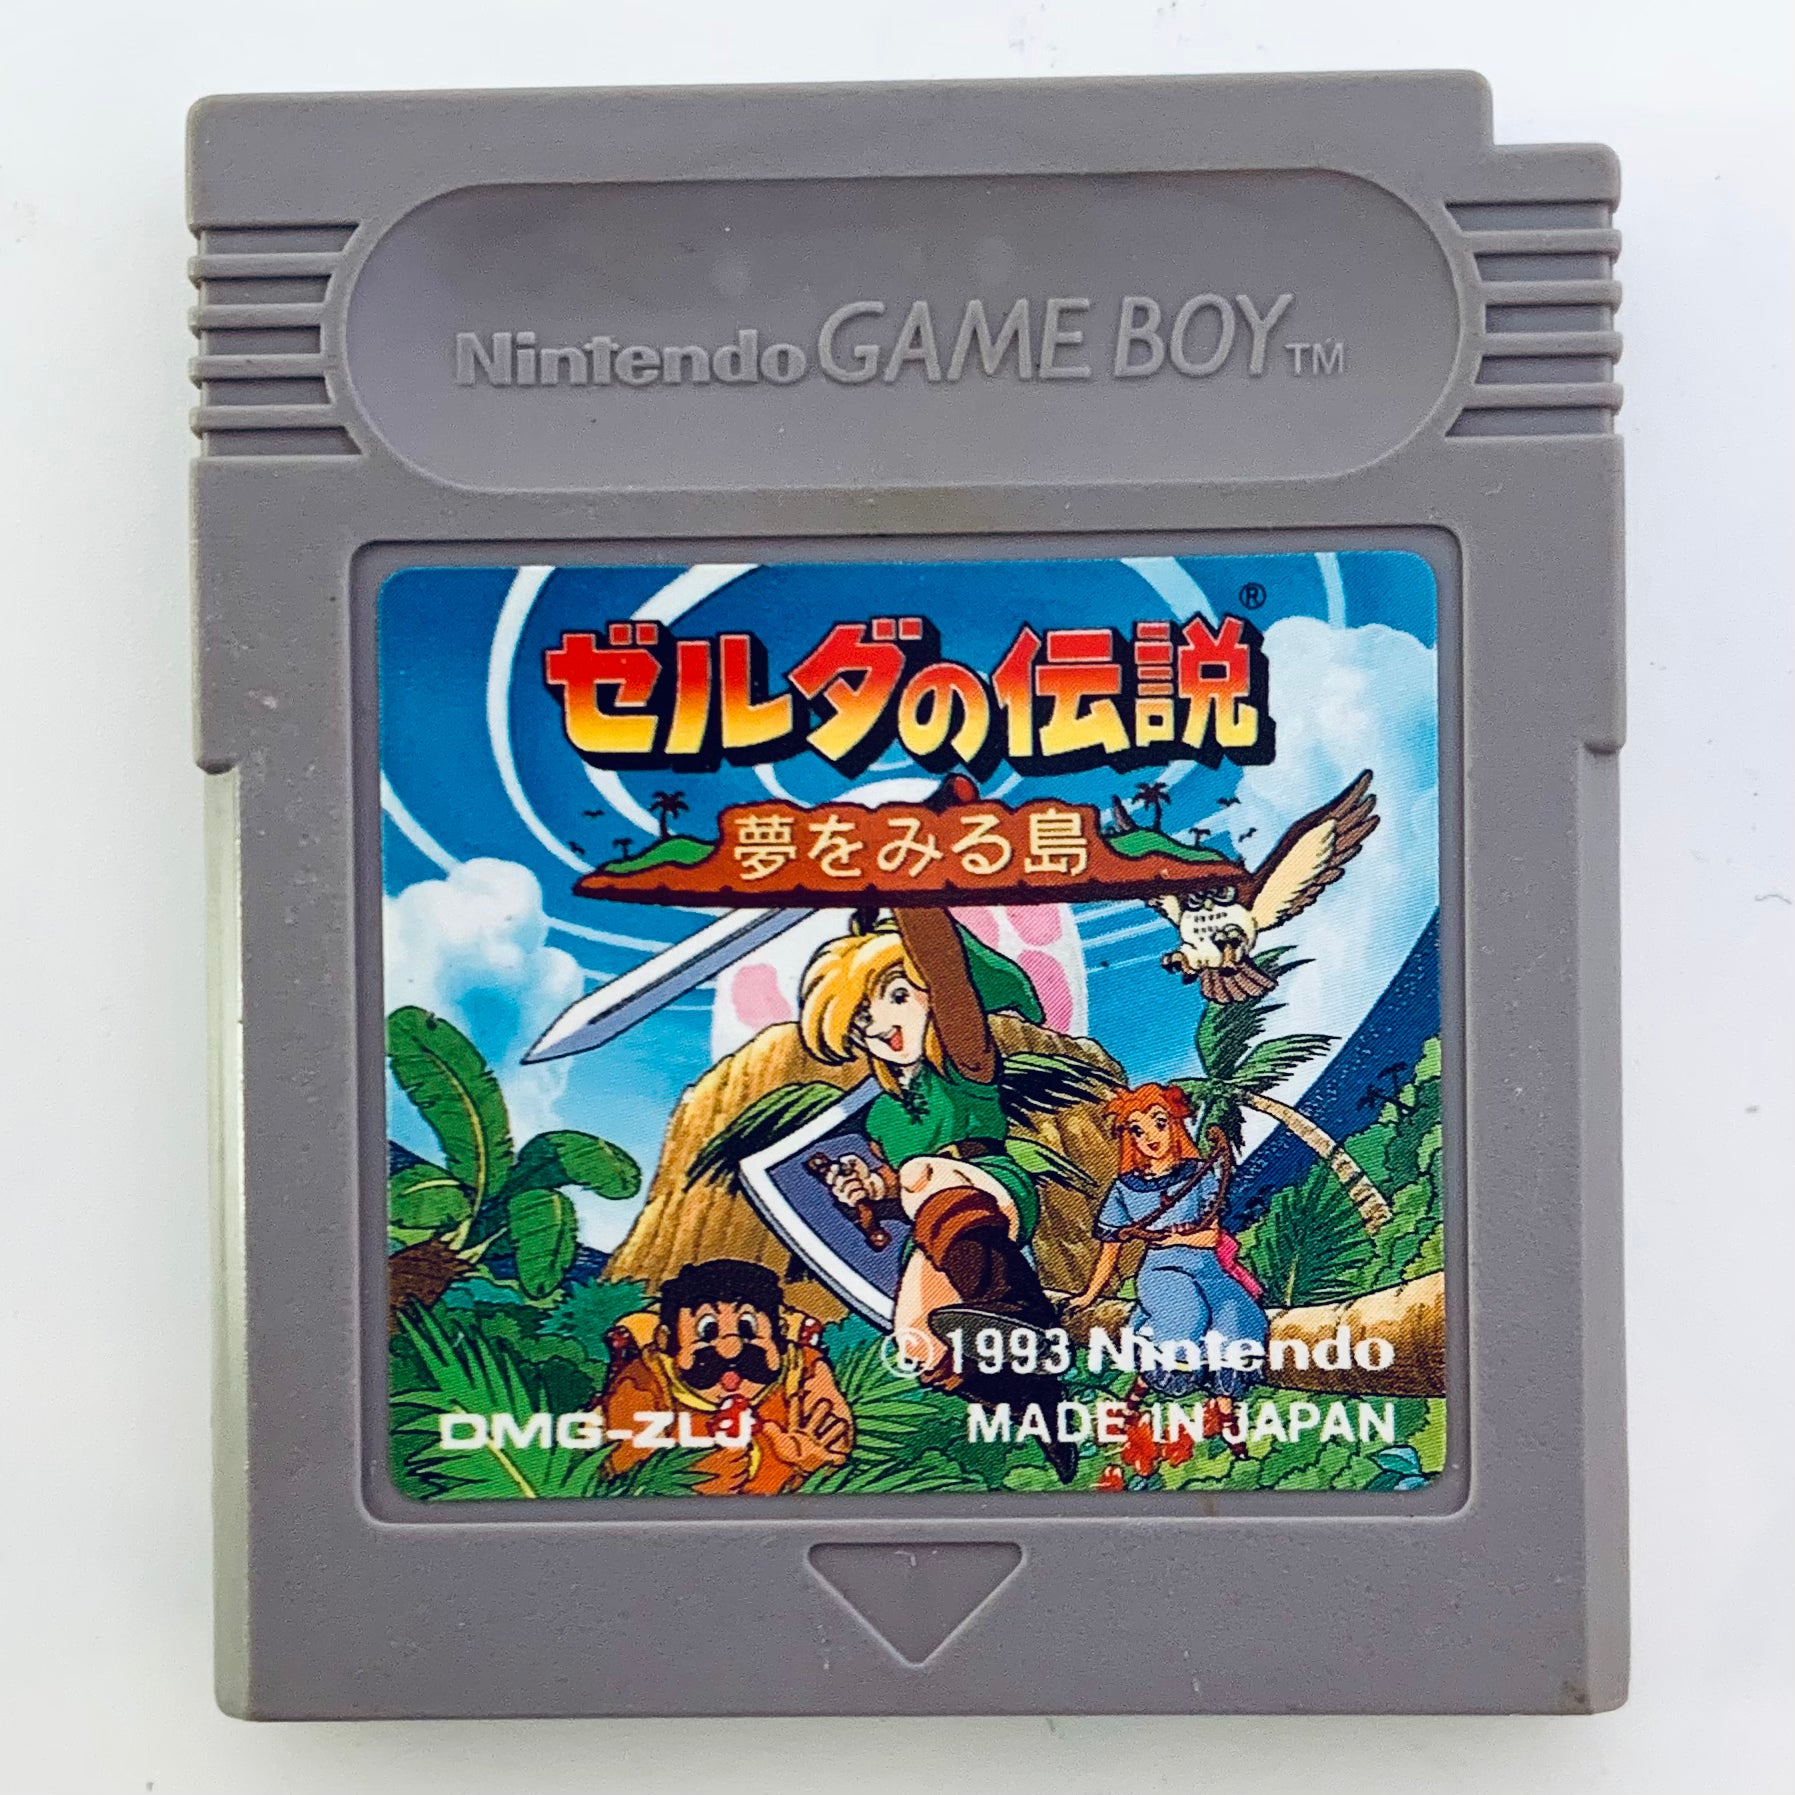 GameBoy Color game - The Legend of Zelda: Link's Awakening DX 